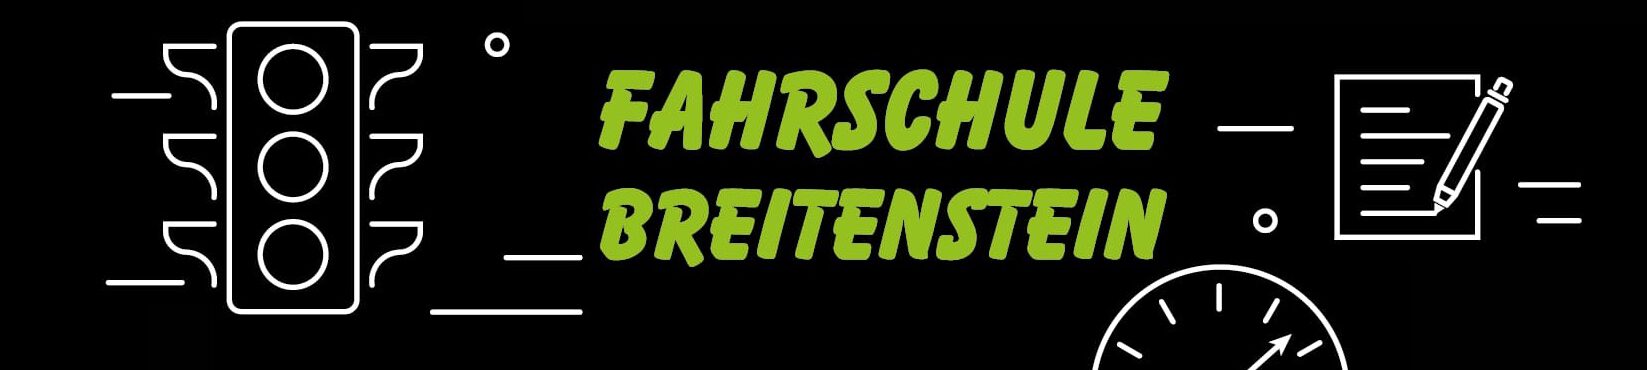 Fahrschule Breitenstein